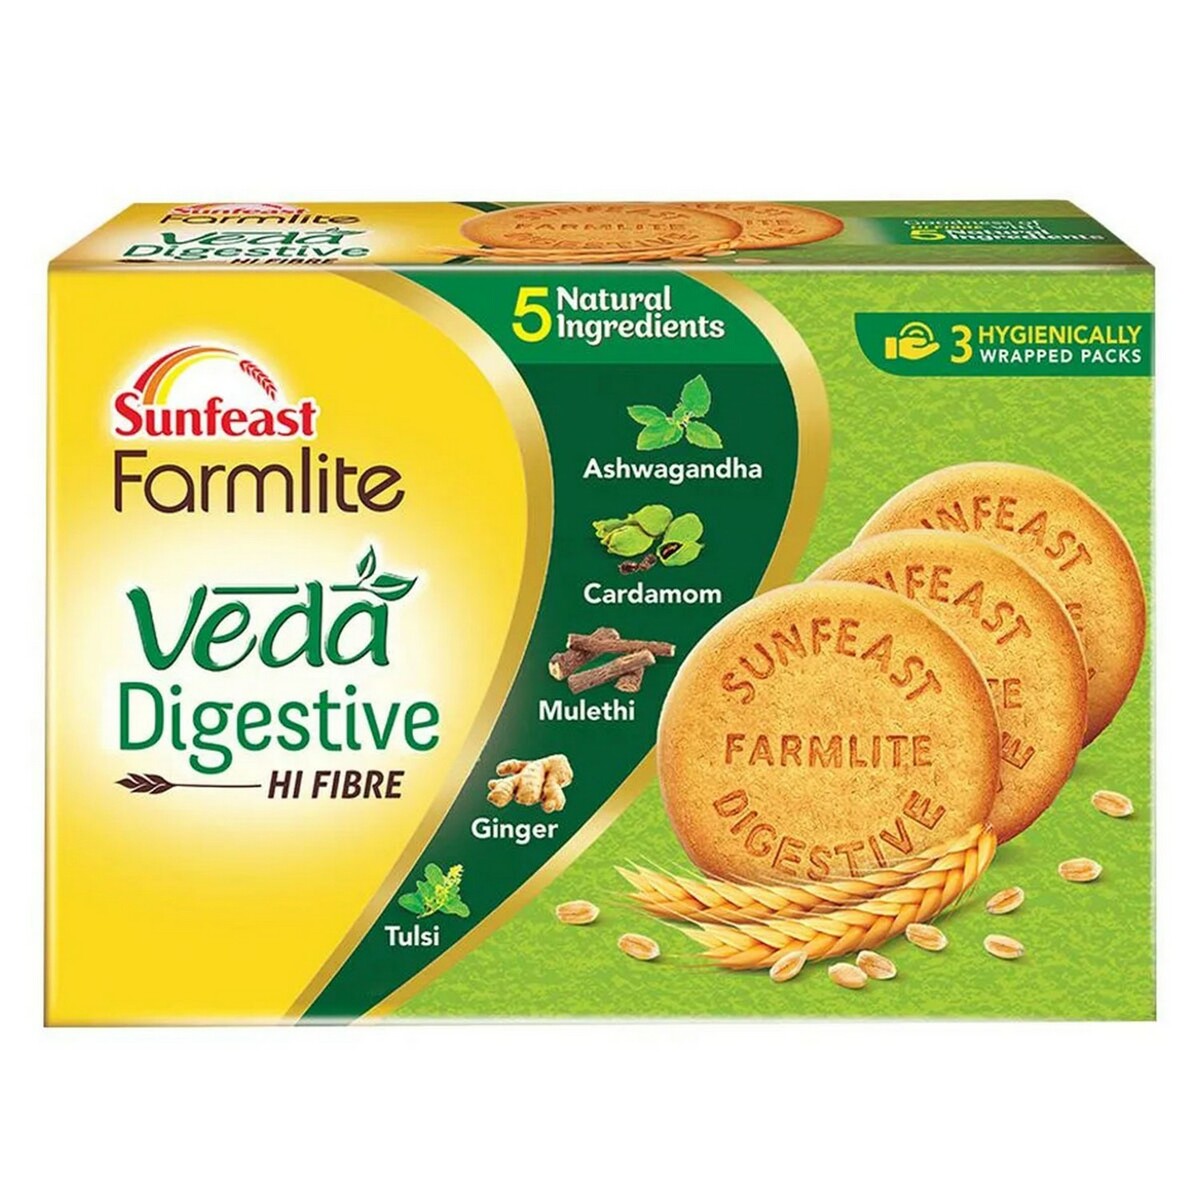 Sunfeast Farmlite Veda Digestive 250g